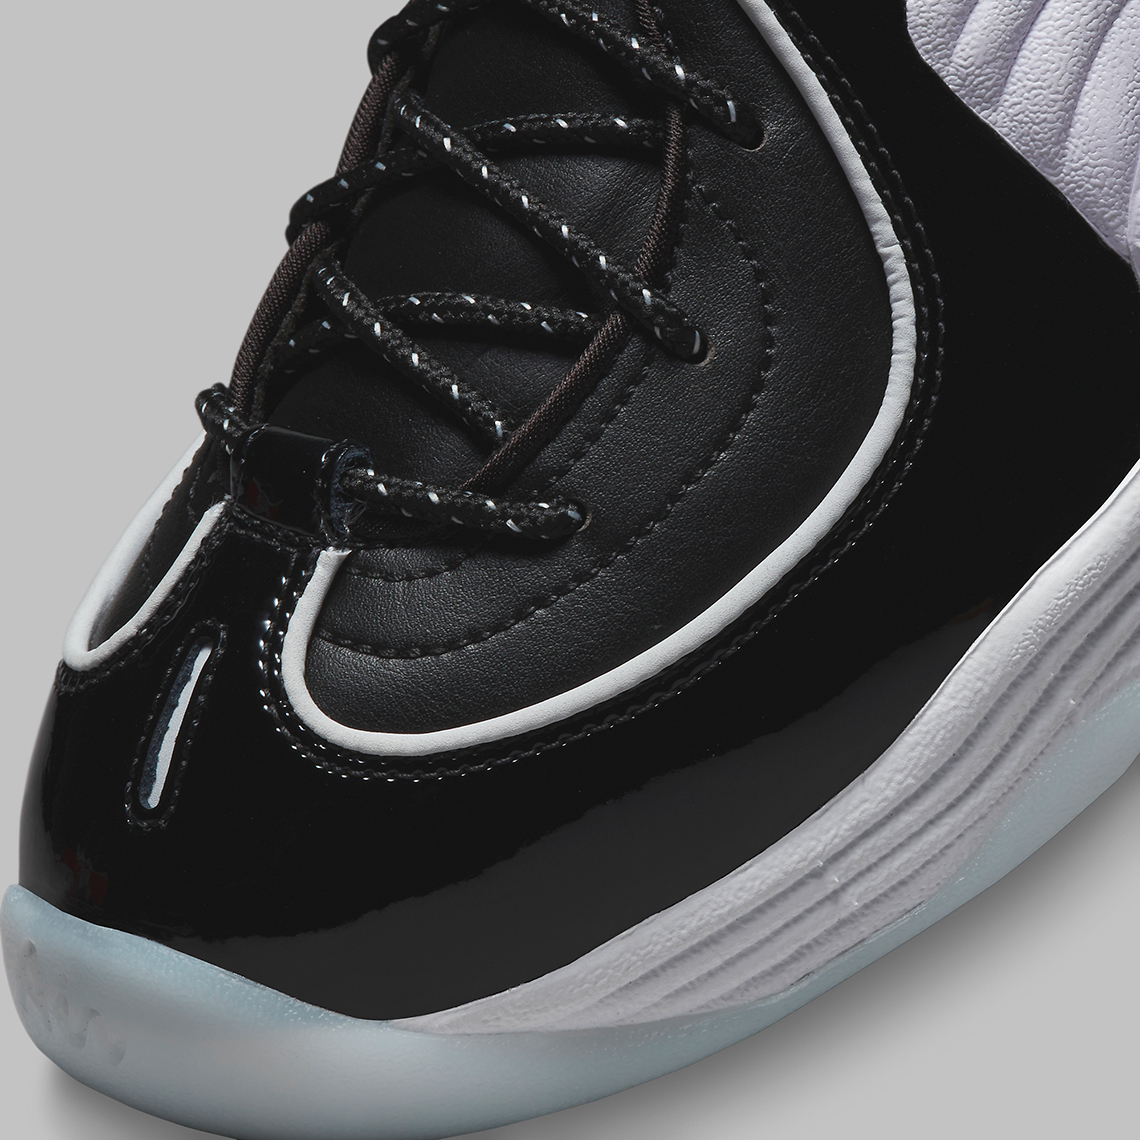 Nike Nike JORDAN B Black White Blue Dv0817 001 1